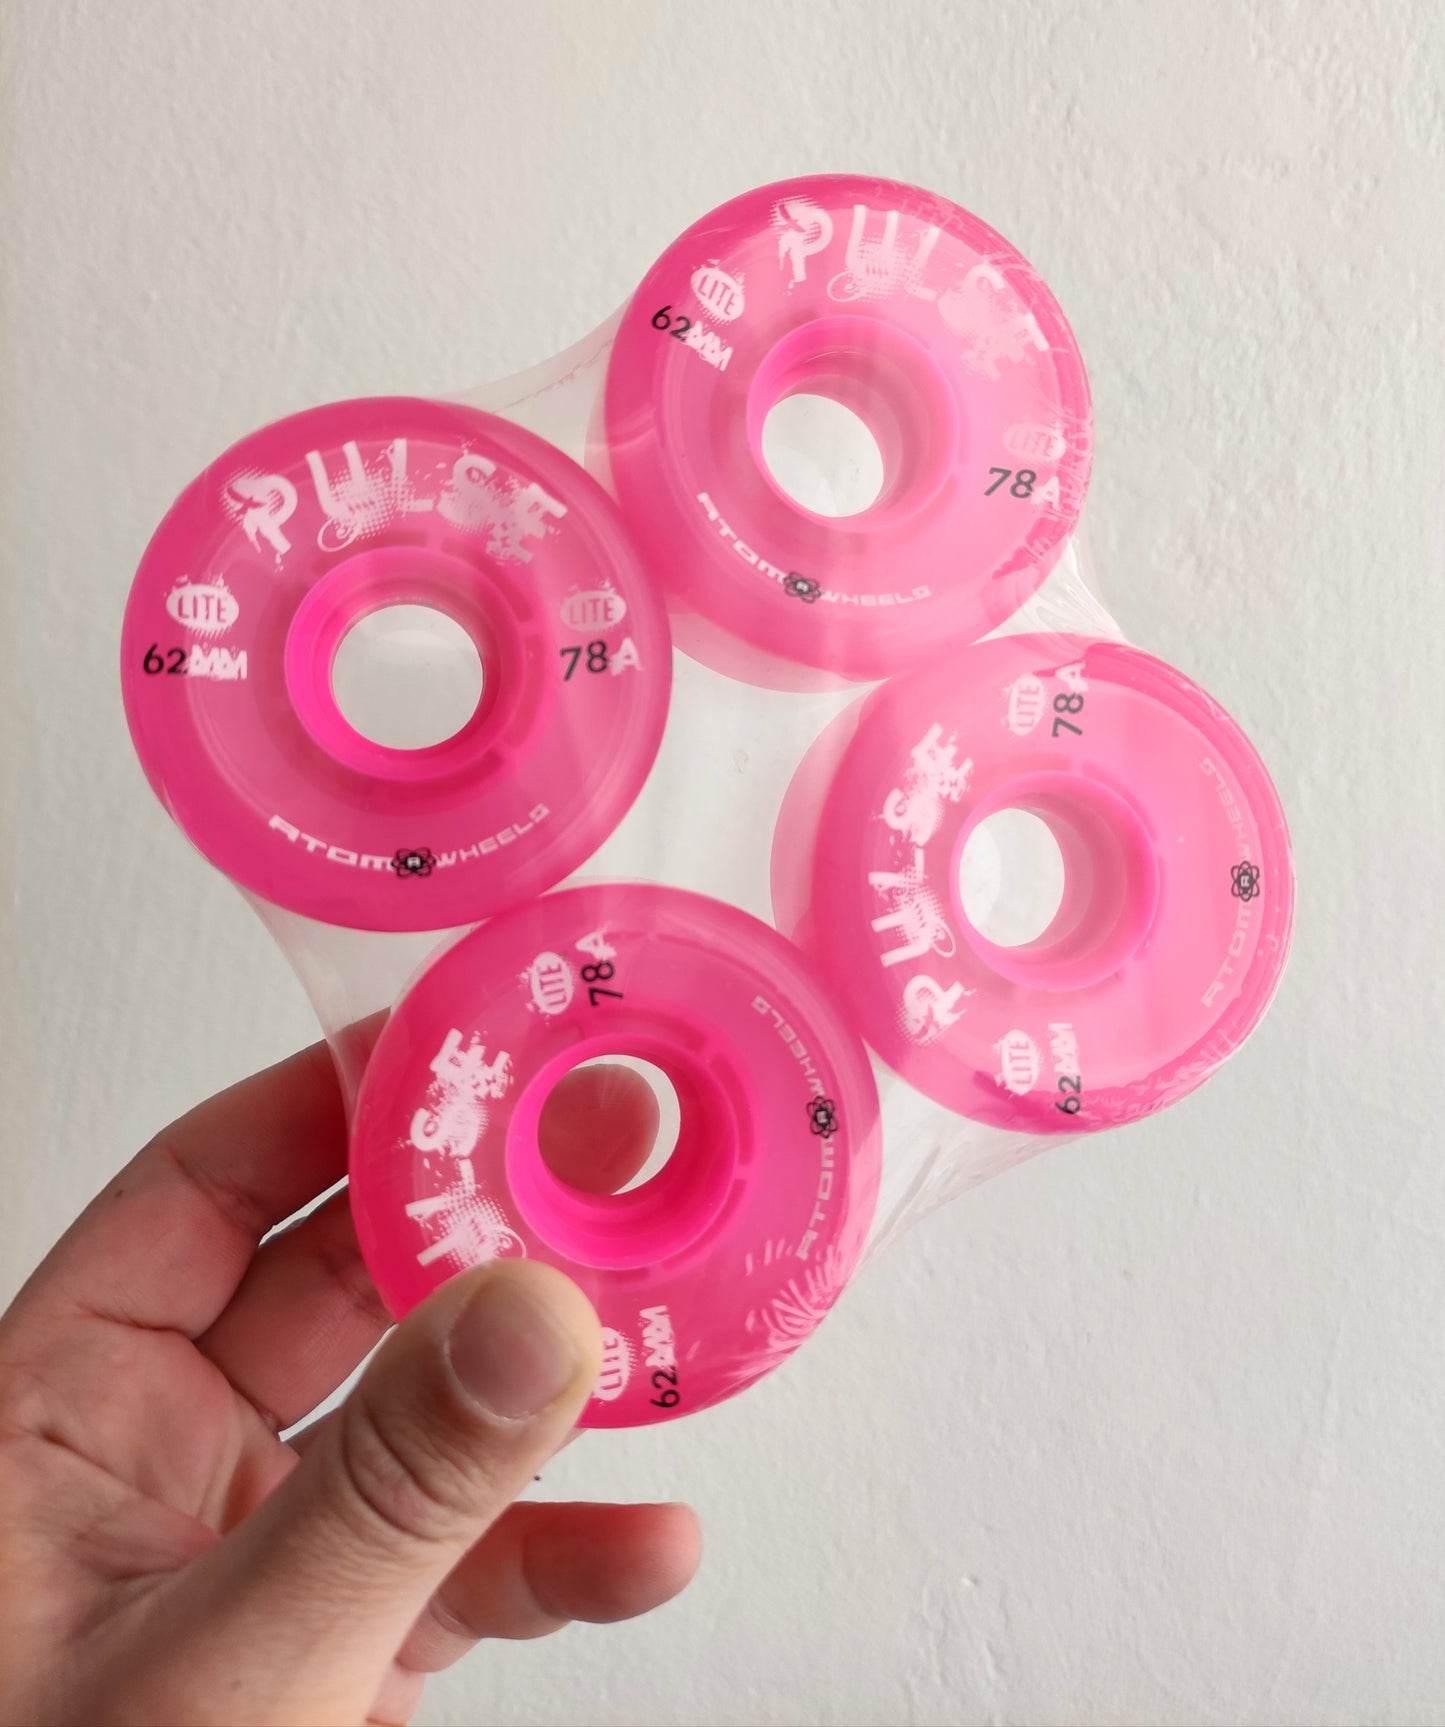 Atom Pulse Lite Pink wheels - rollerskate outdoor wheels - pack of 4